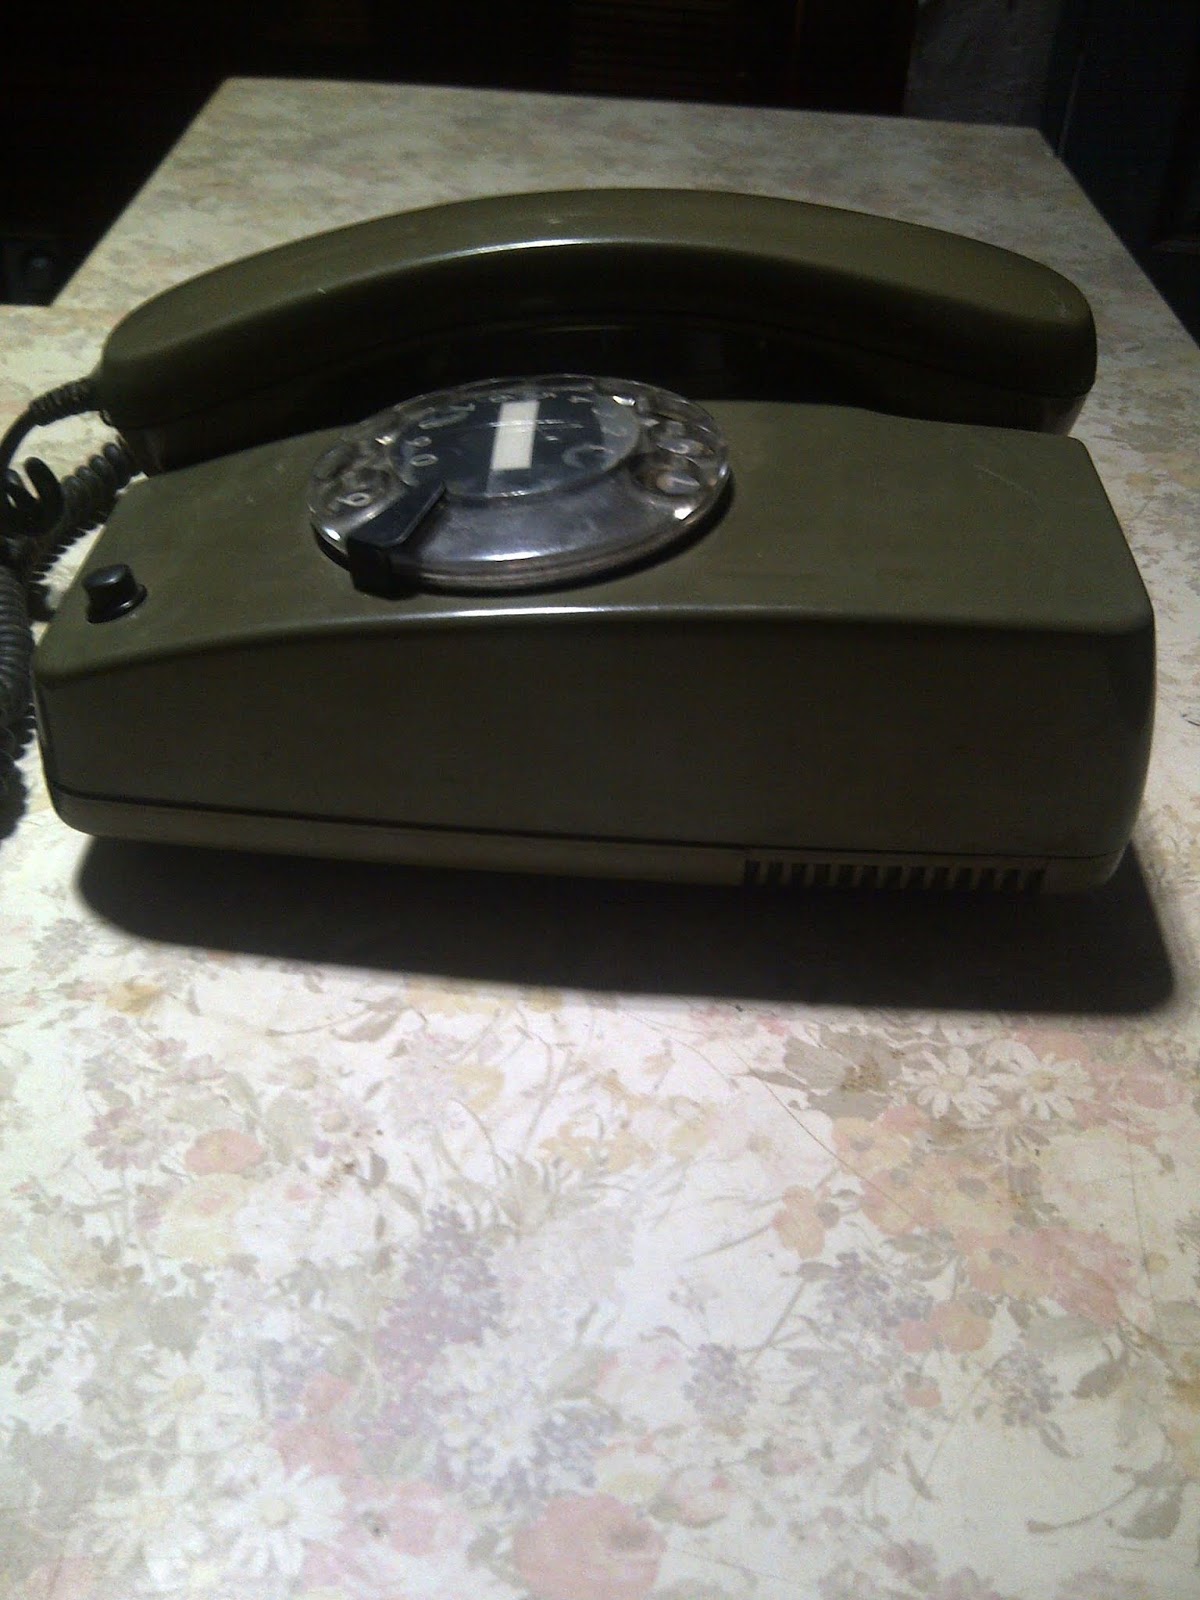 Нова 21 телефон. Дисковый телефон Siemens 1937 г.. Трубка офисного телефона Siemens. Jatl21 телефон. Телефон сс21.